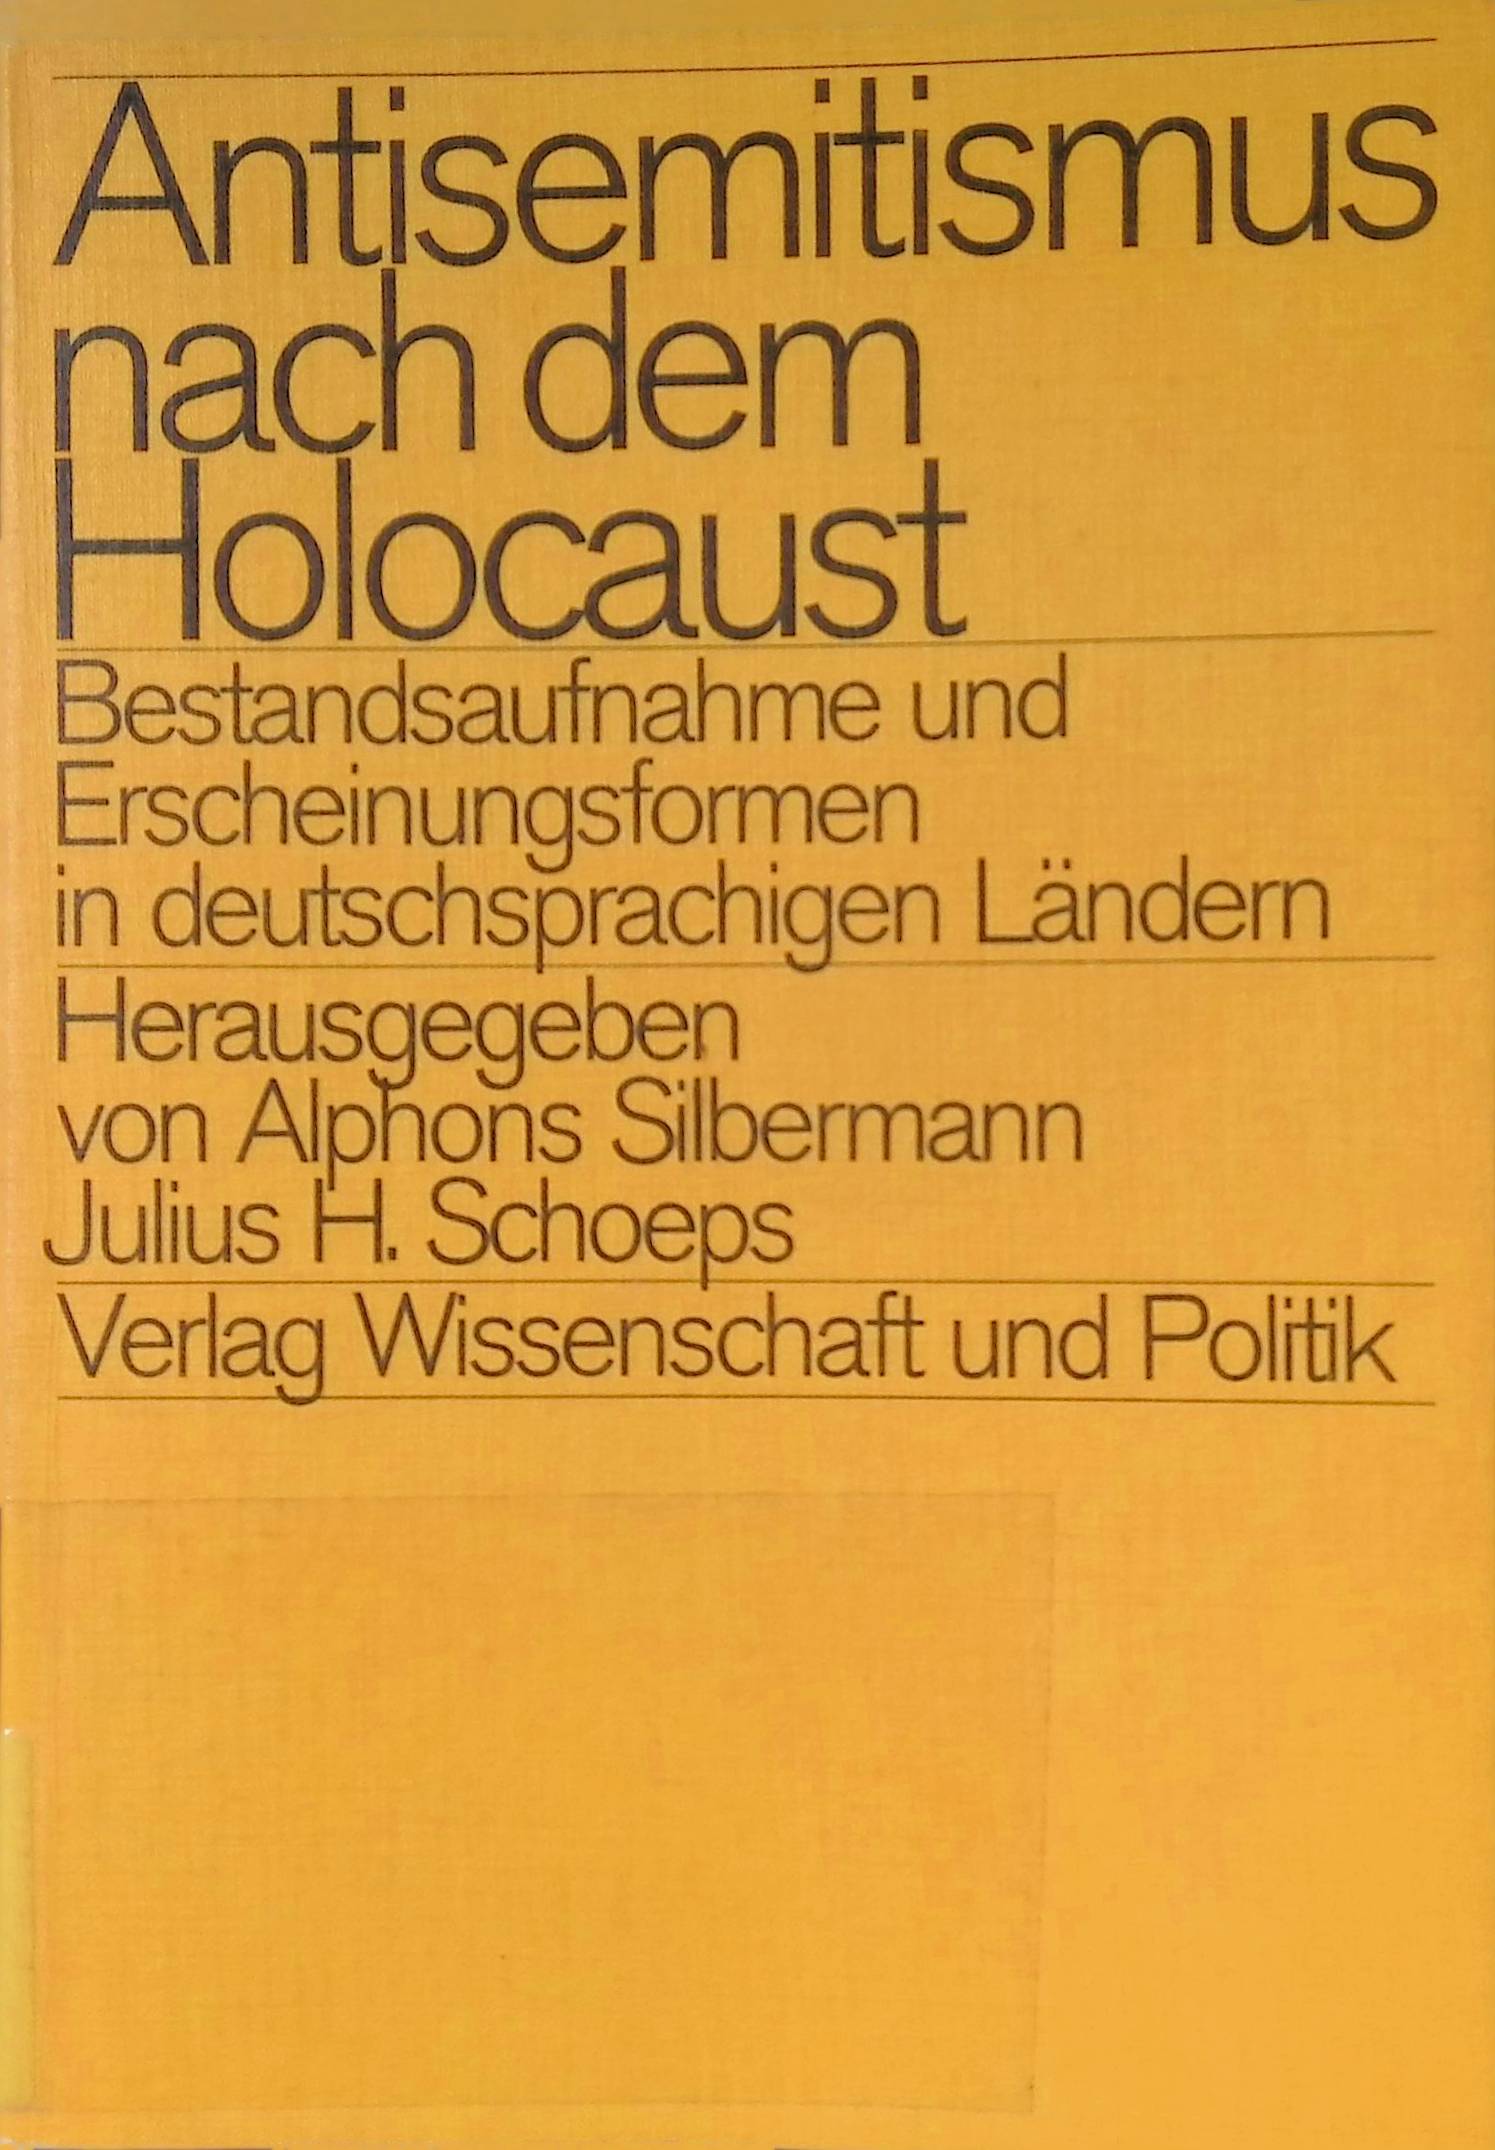 Antisemitismus nach dem Holocaust : Bestandsaufnahme u. Erscheinungsformen in deutschsprachigen Ländern. - Silbermann, Alphons